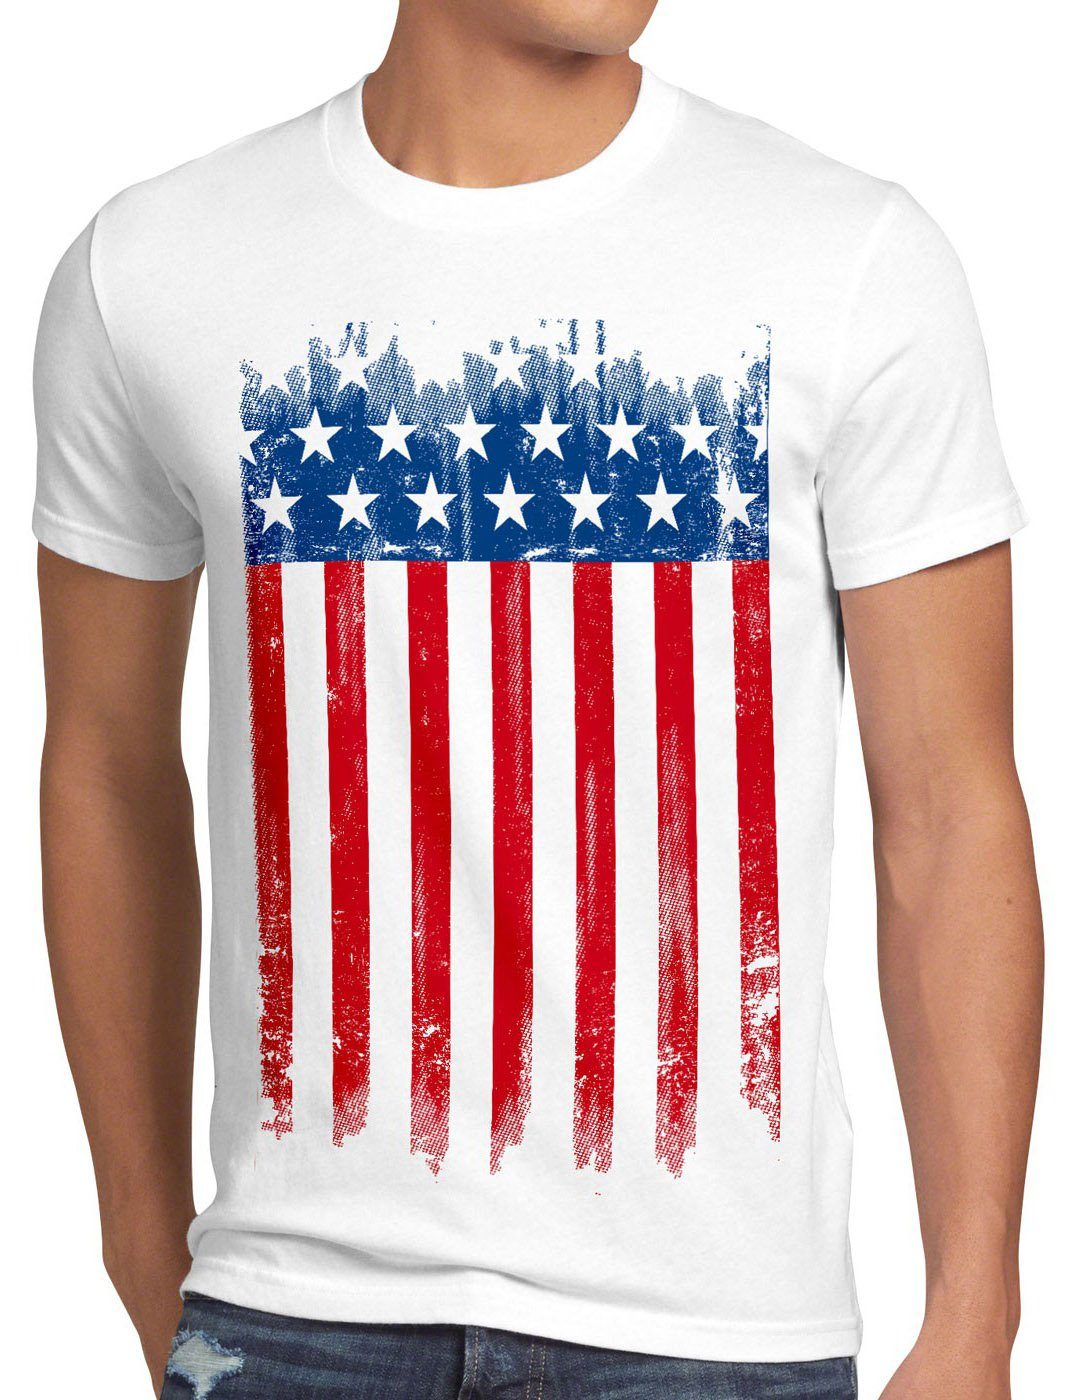 style3 Print-Shirt Herren T-Shirt US Flagge vereinigte staaten united states amerika america von weiß